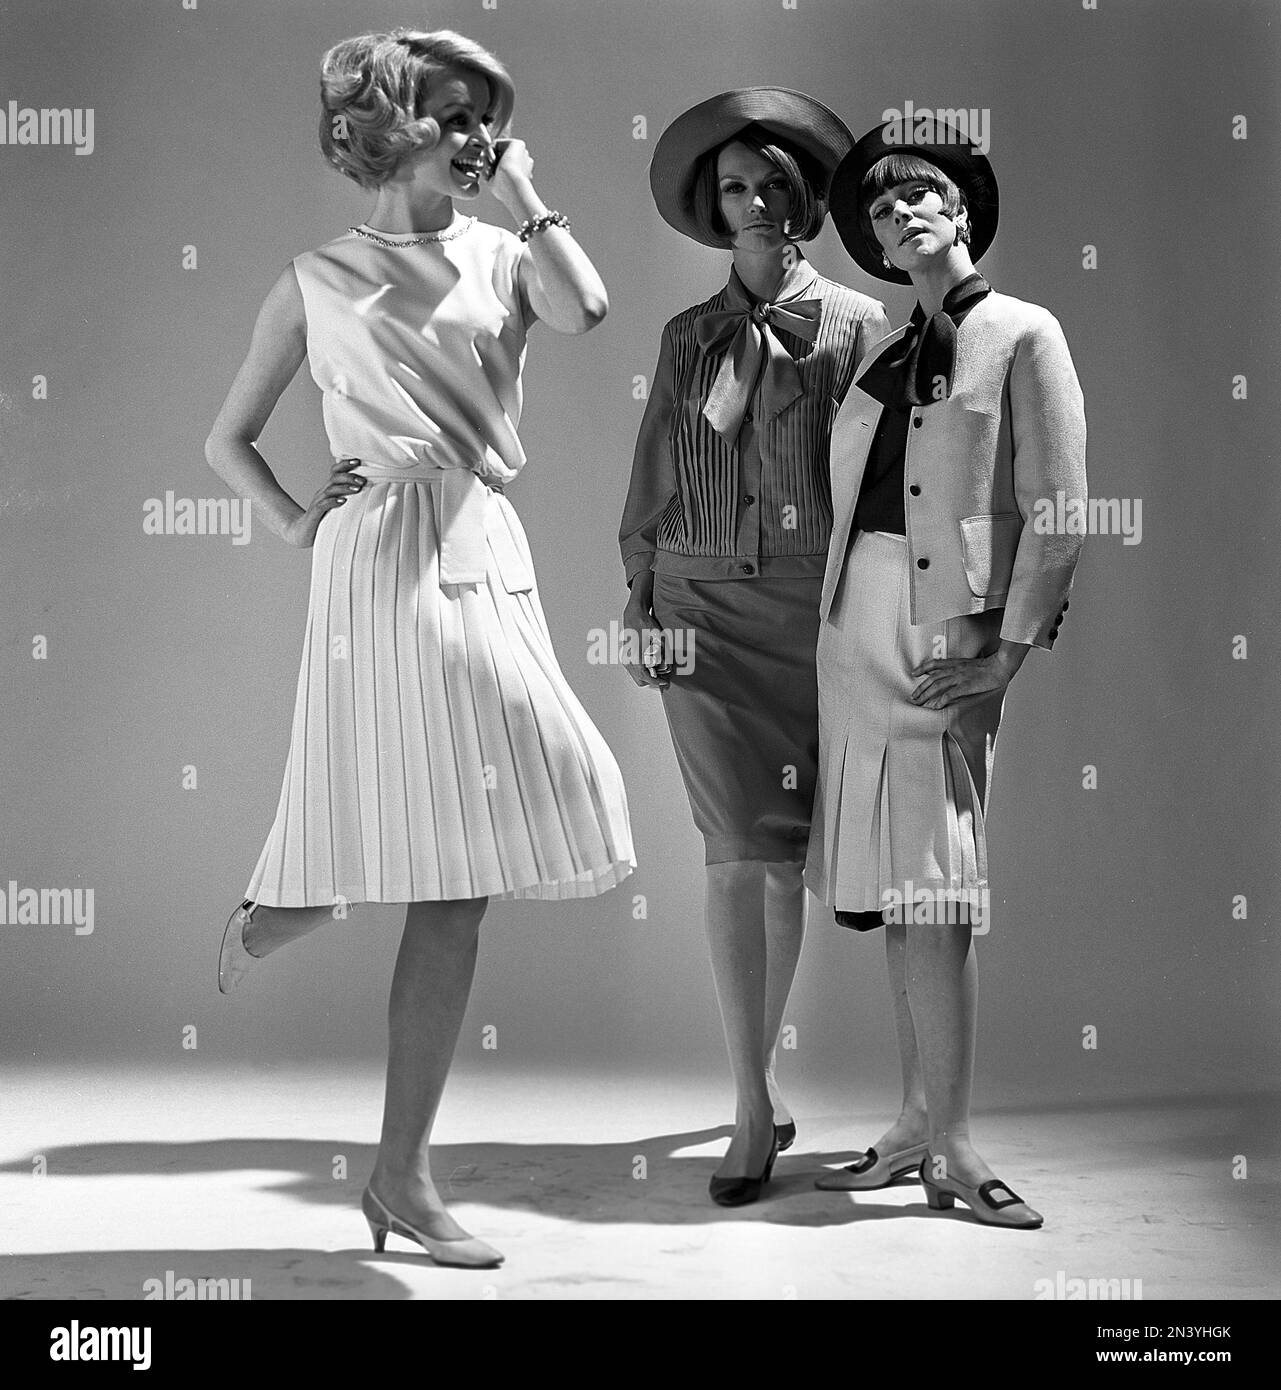 Dans le 1960s. Trois modèles de mode dans un studio portant la mode de l'été 1965. Une robe blanche inspirée de Marilyn Monroe se distingue. Suède 1965 Banque D'Images